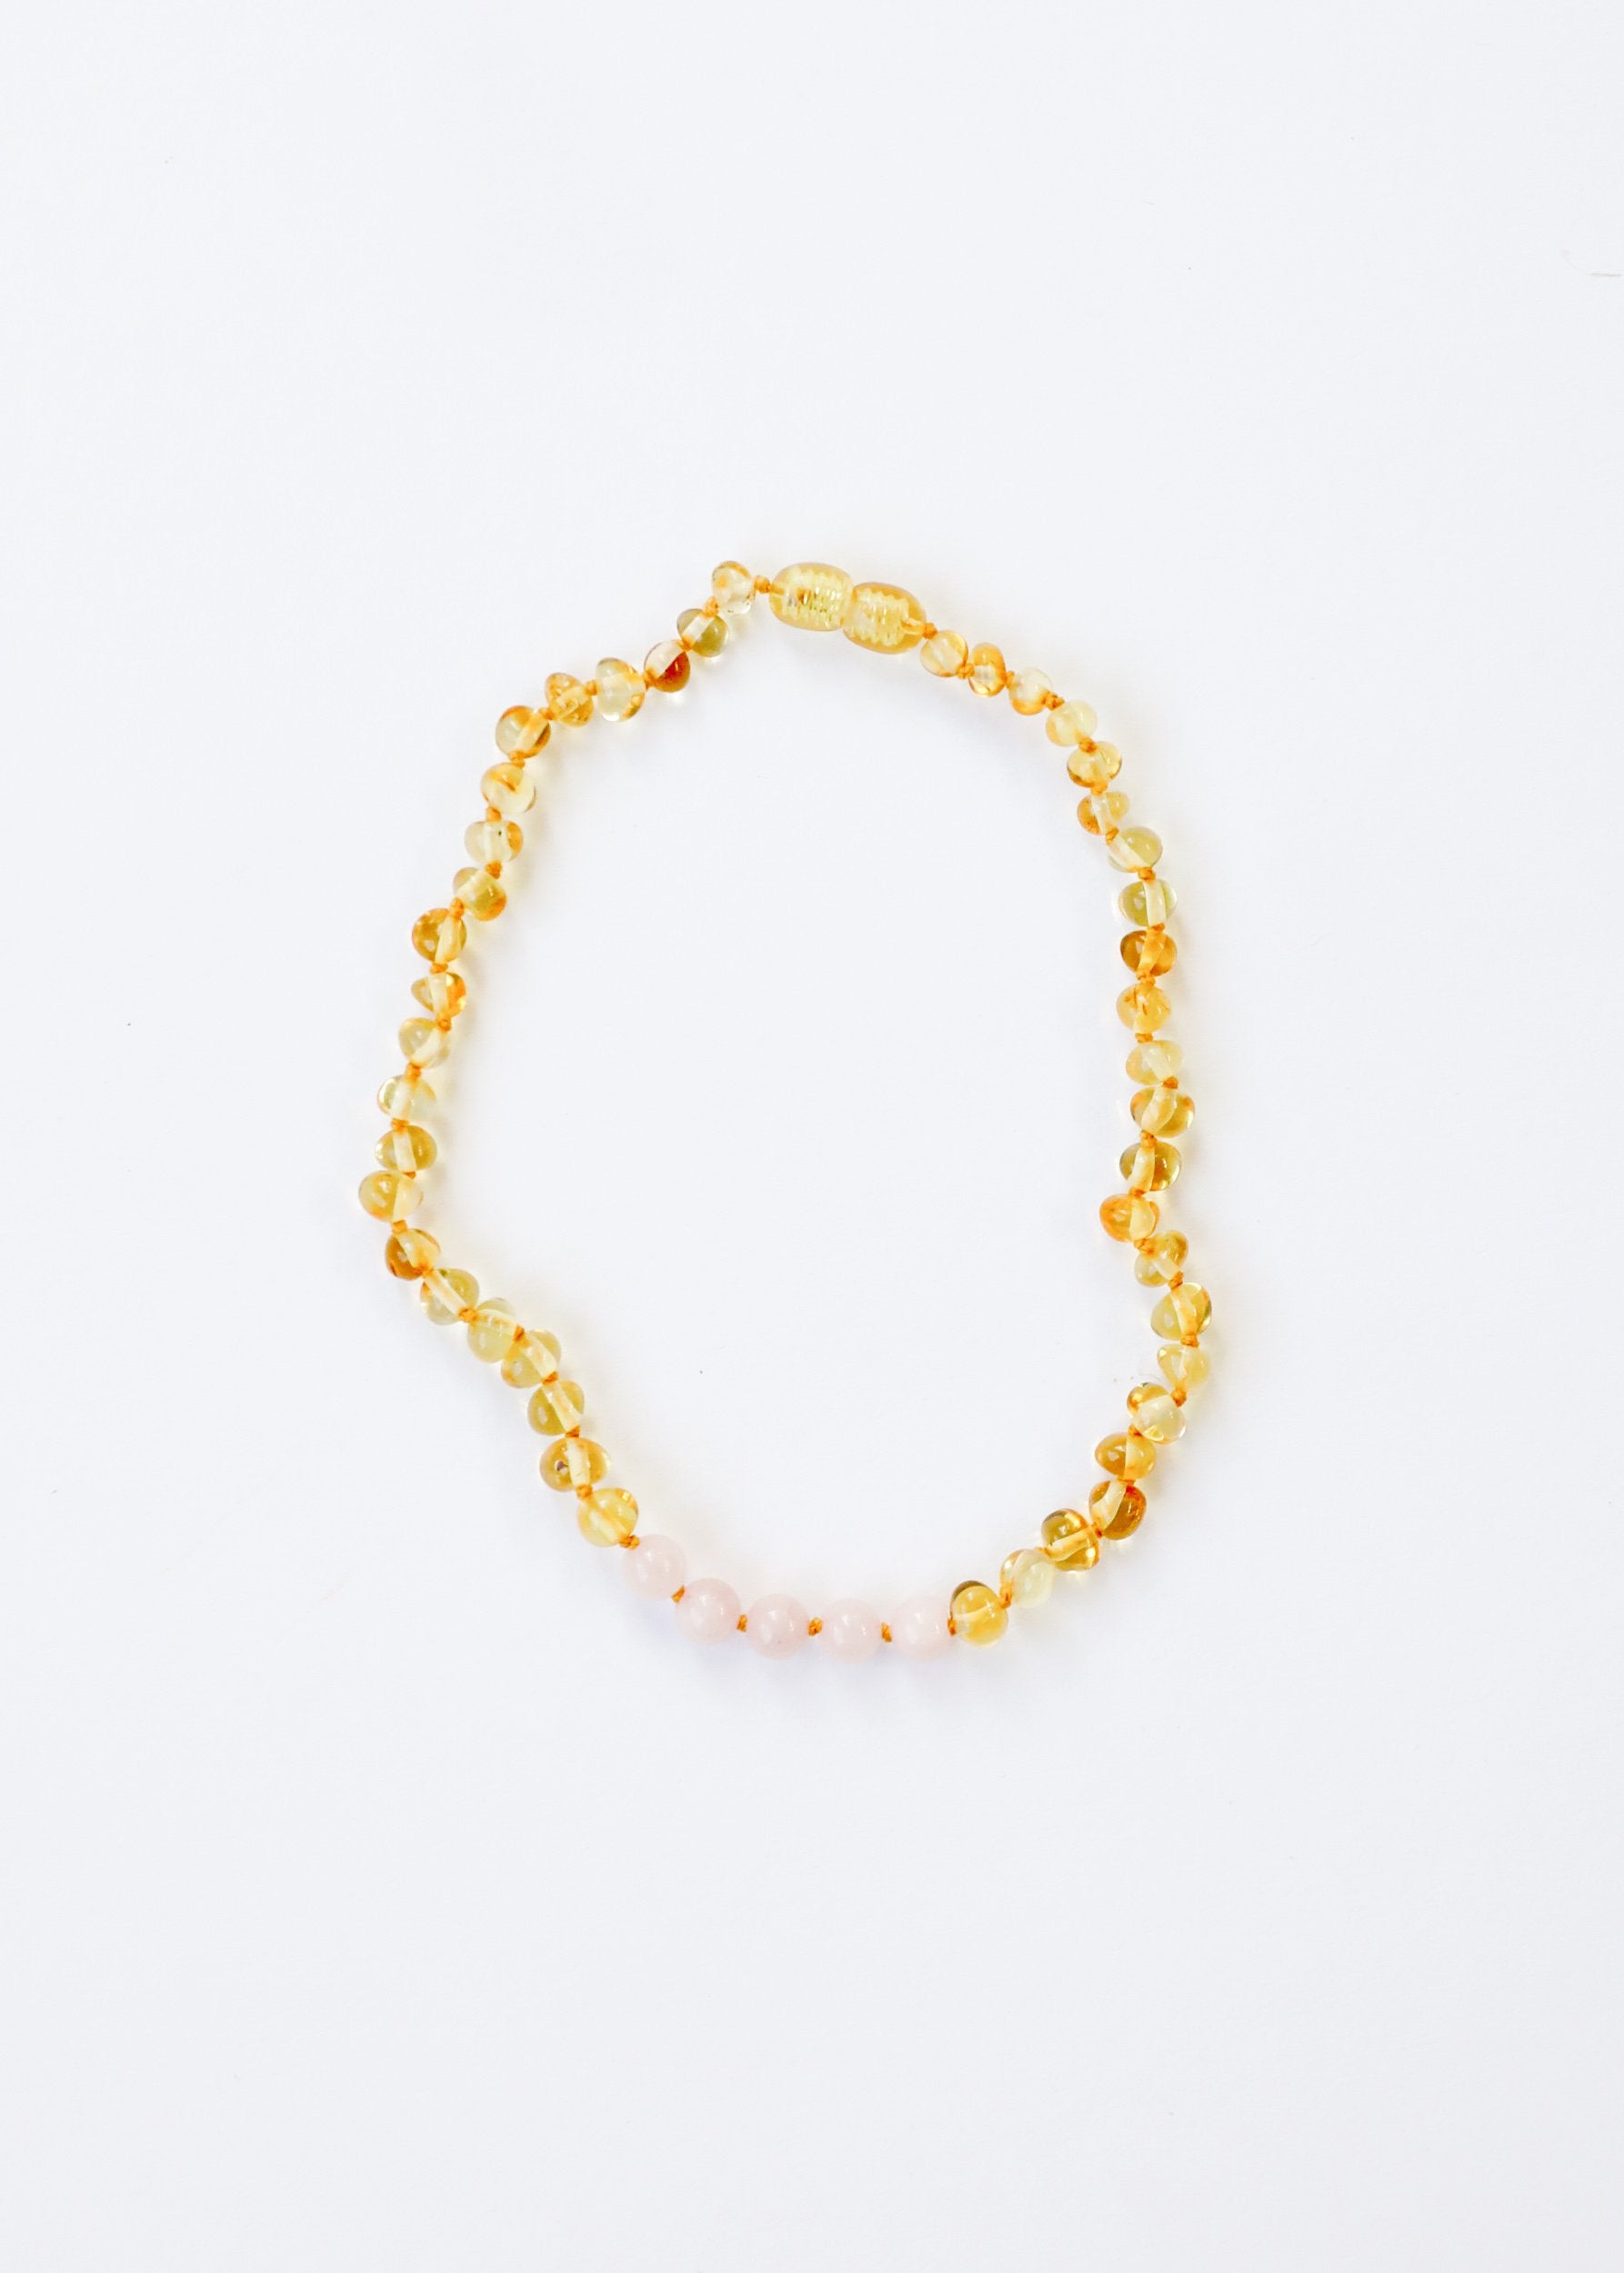 Canyon Leaf Necklace / Polished Honey Amber + Rose Quartz